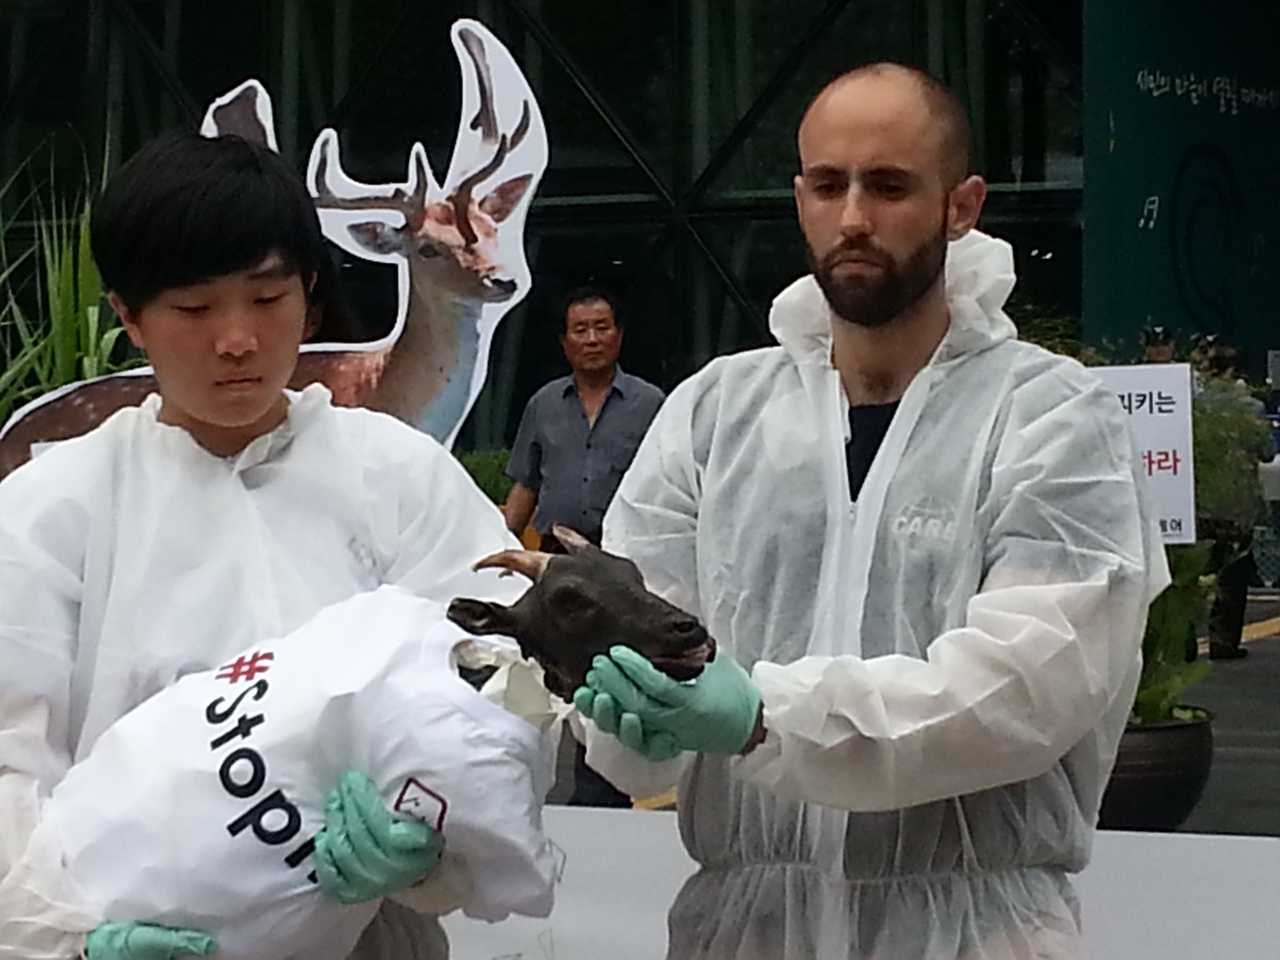 '케어'와 '동물을 위한 행동'은 매각된 후 농장에서 도축된 서울동물원의 새끼 흑염소 사체를 증거물로 입수, 지난 8월 20일 기자회견에서 공개했다.  
